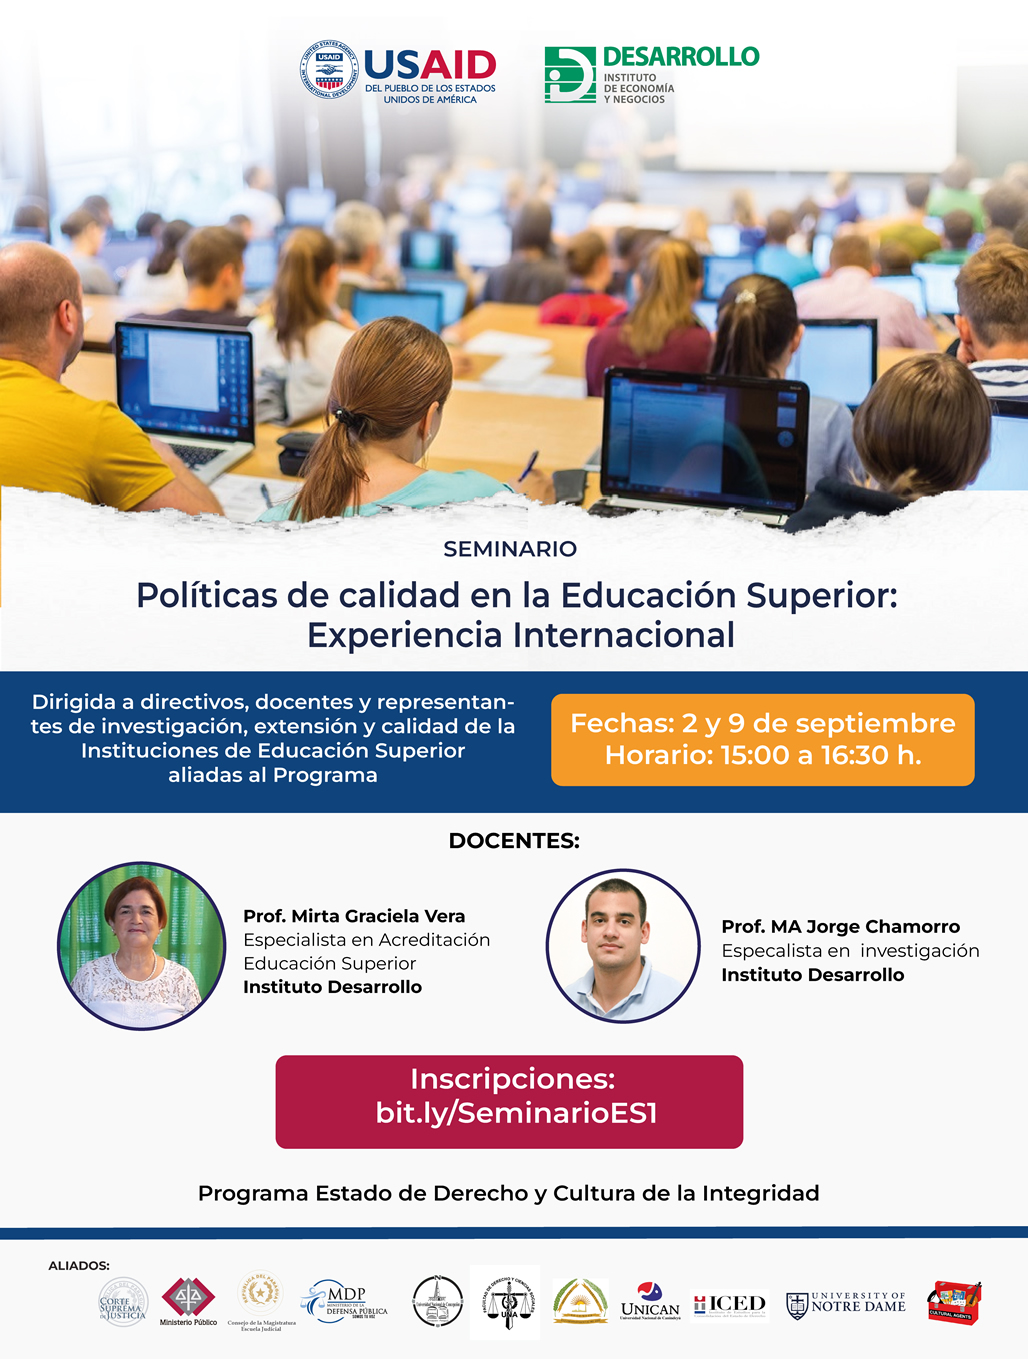 Toca para ir a formulario de inscripción del Seminario "Políticas de Calidad en la Educación Superior: Experiencia Internacional"